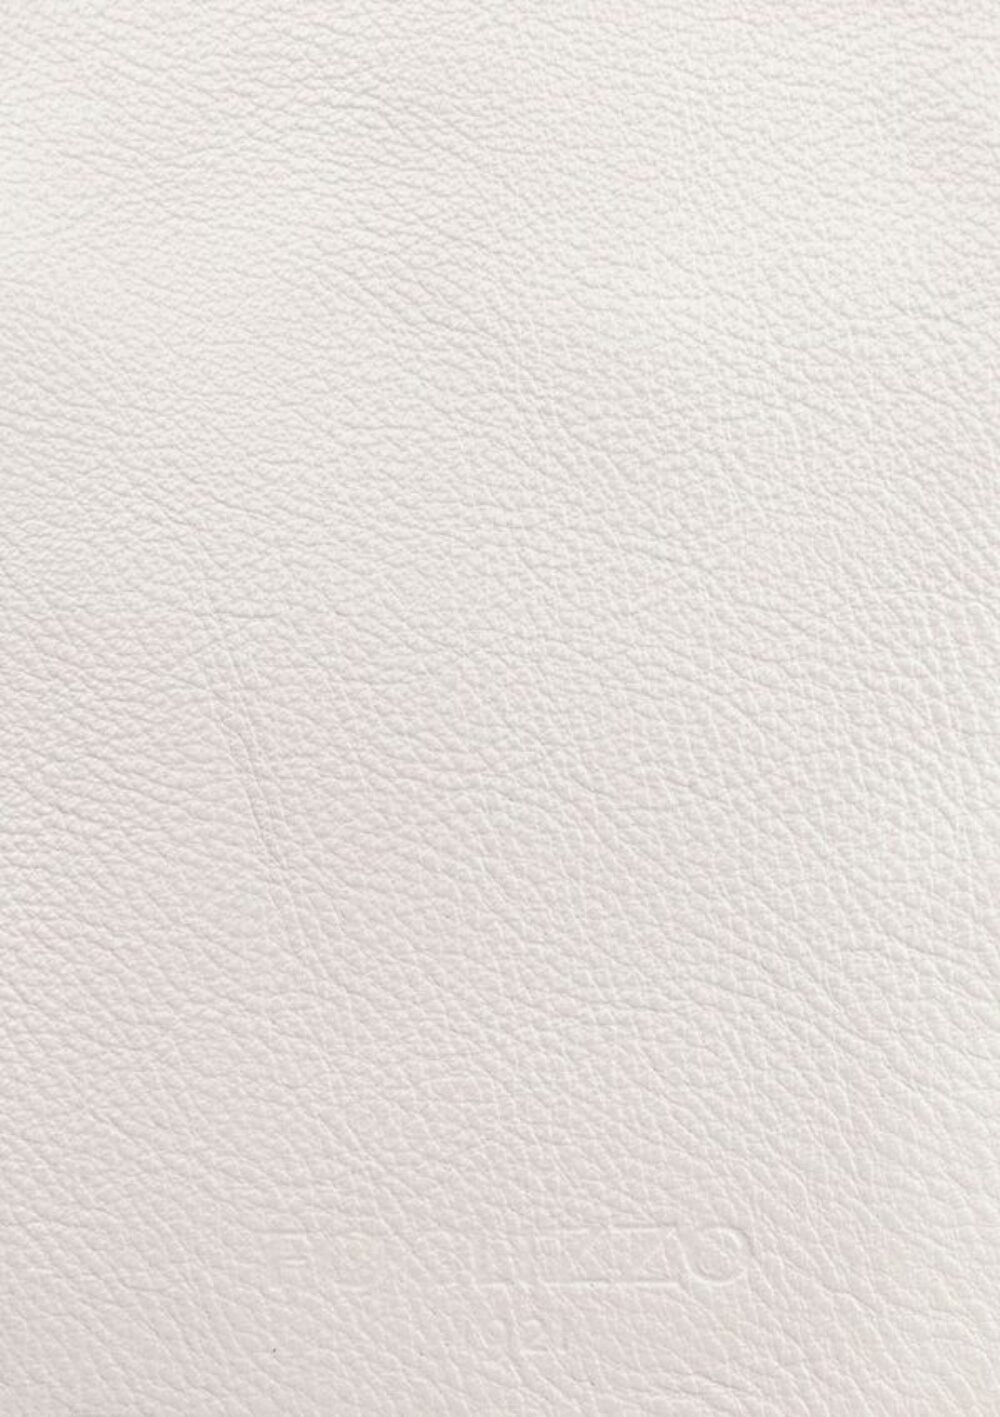 Luxusdesign und hochwertige Teppiche nach Maß • Ultra White Jade